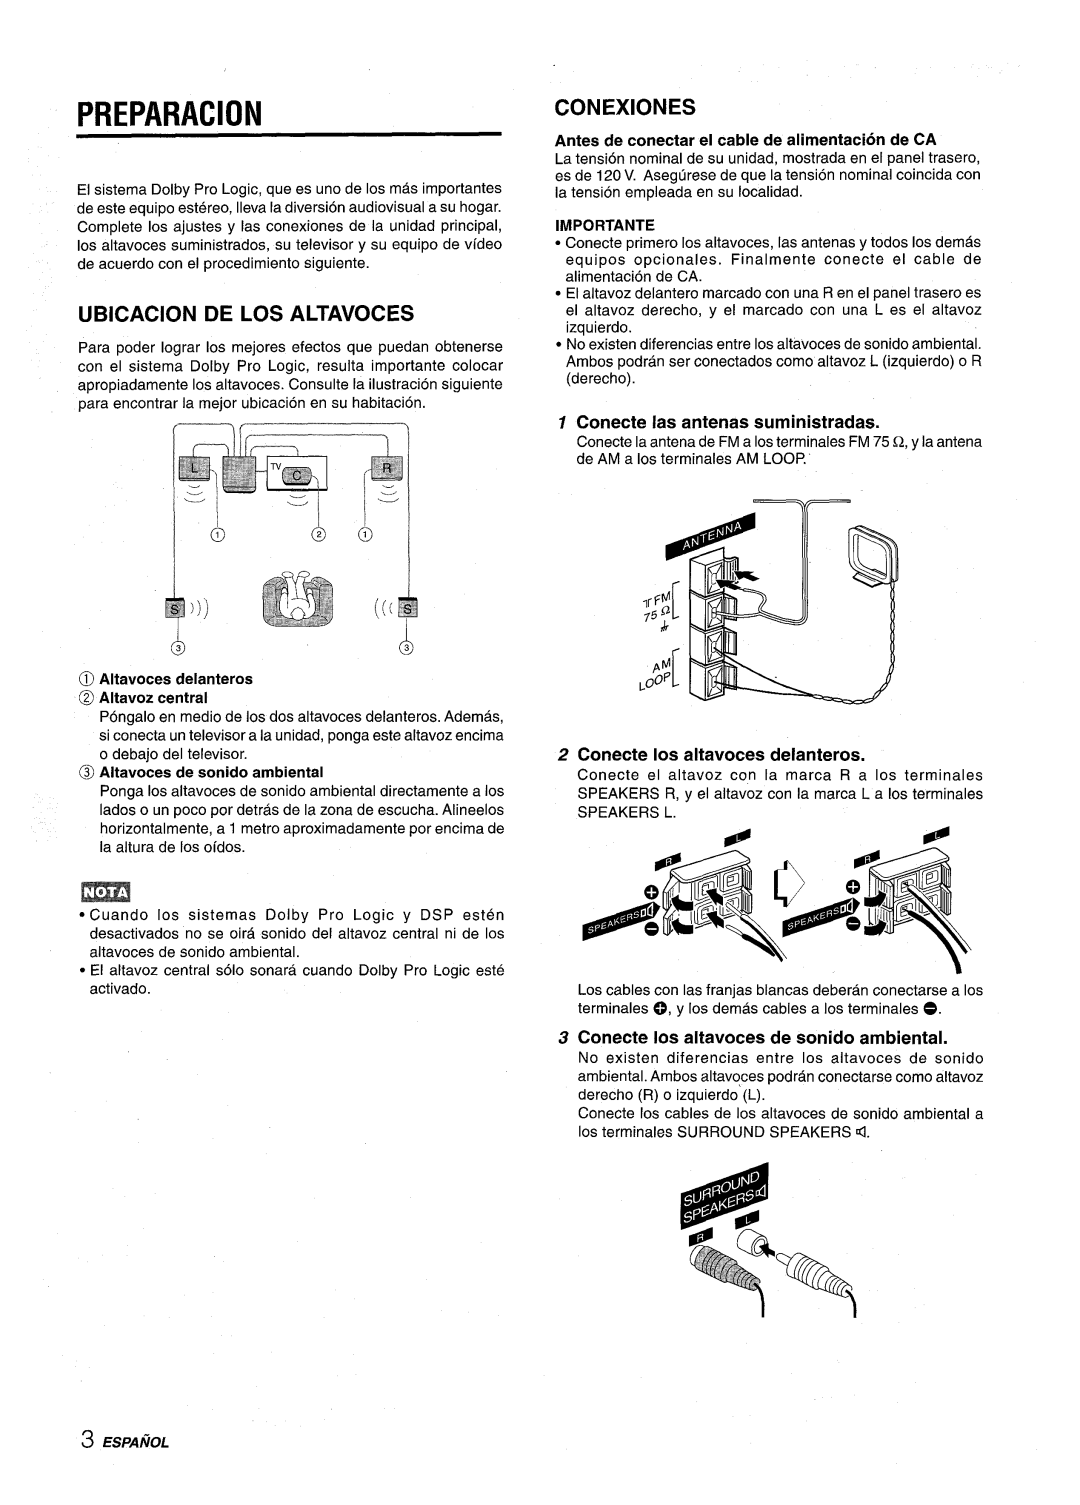 Aiwa NSX-AV800 manual Preparation, Ubicacion De Los Altavoces, Conexiones, Antes de conectar el cable de alimentacion de CA 